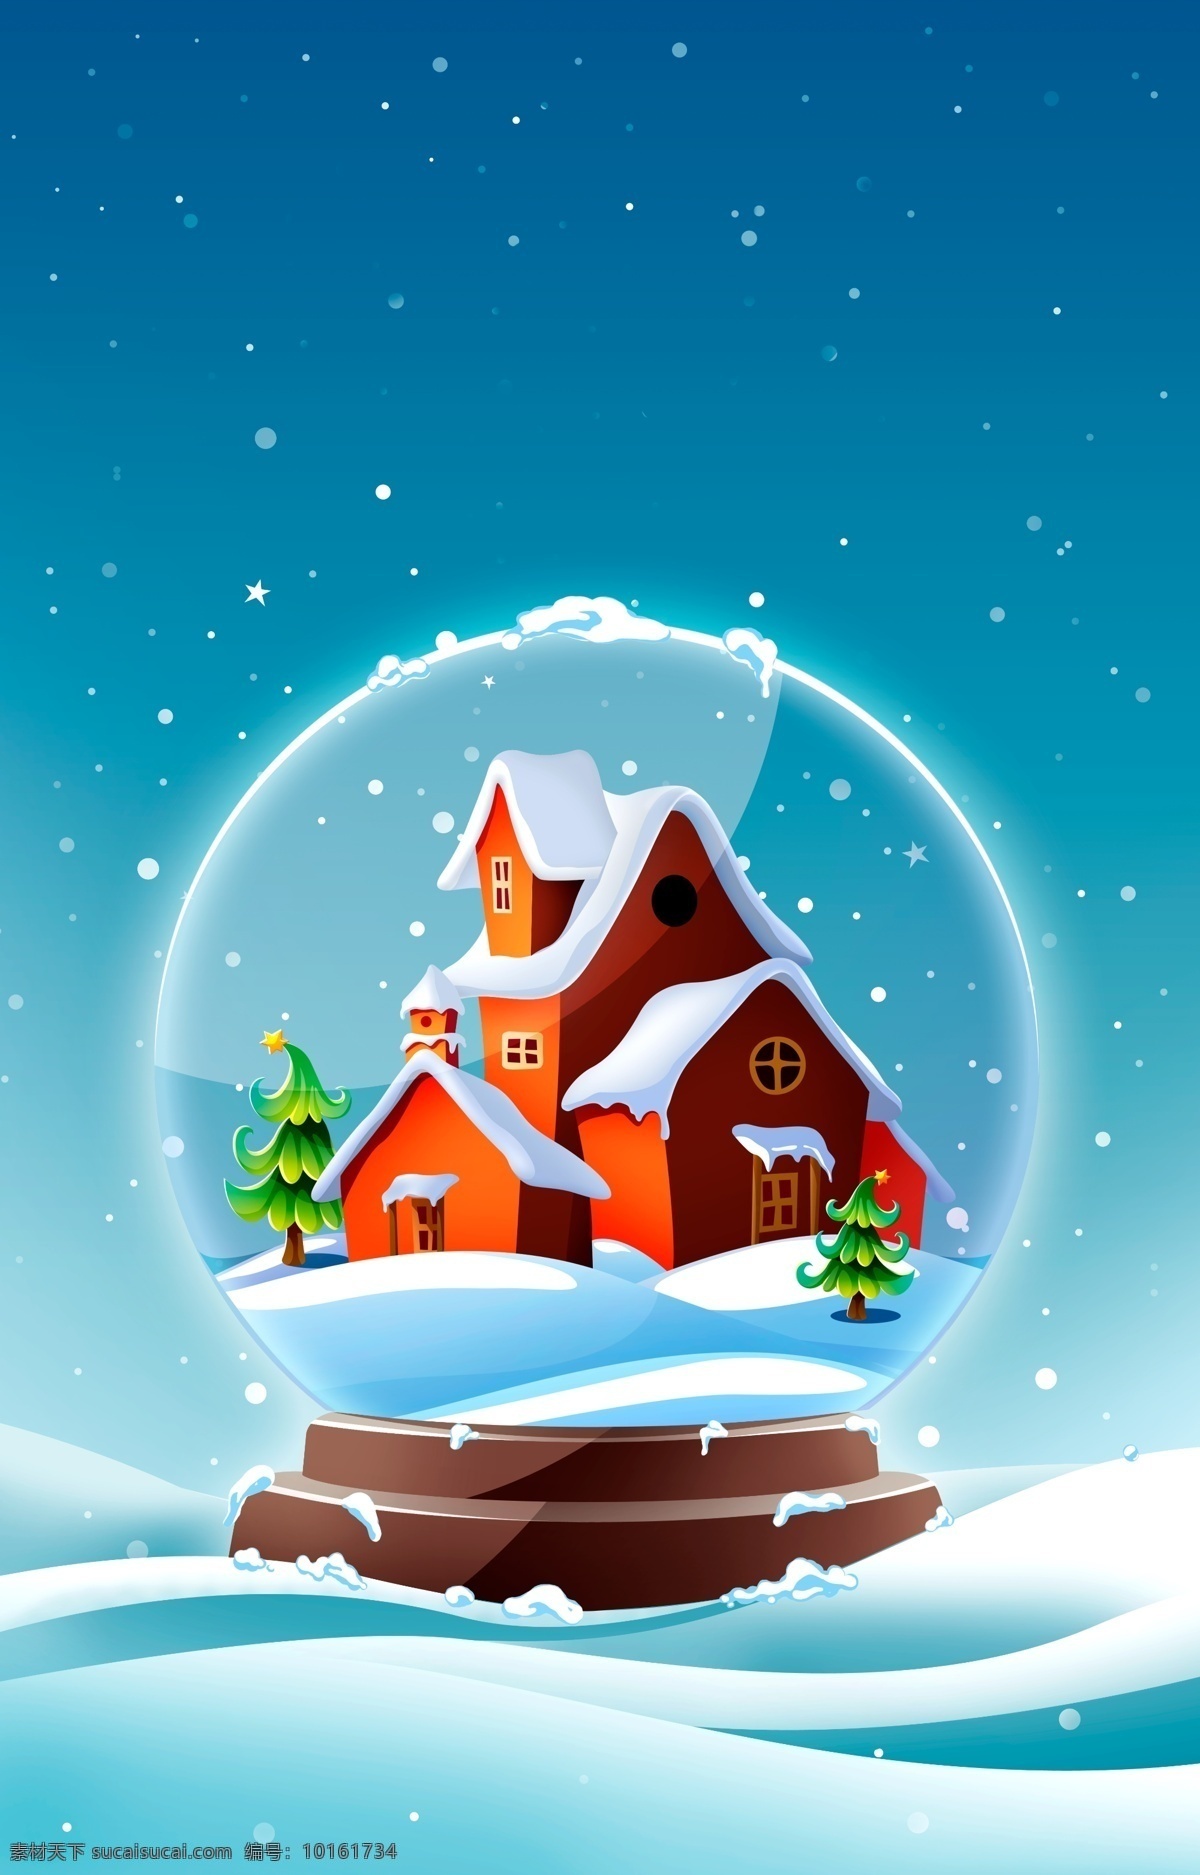 圣诞节 海报 背景 圣诞屋子 雪 节日 西方 庆祝 海报背景 水晶球 平面素材 分层